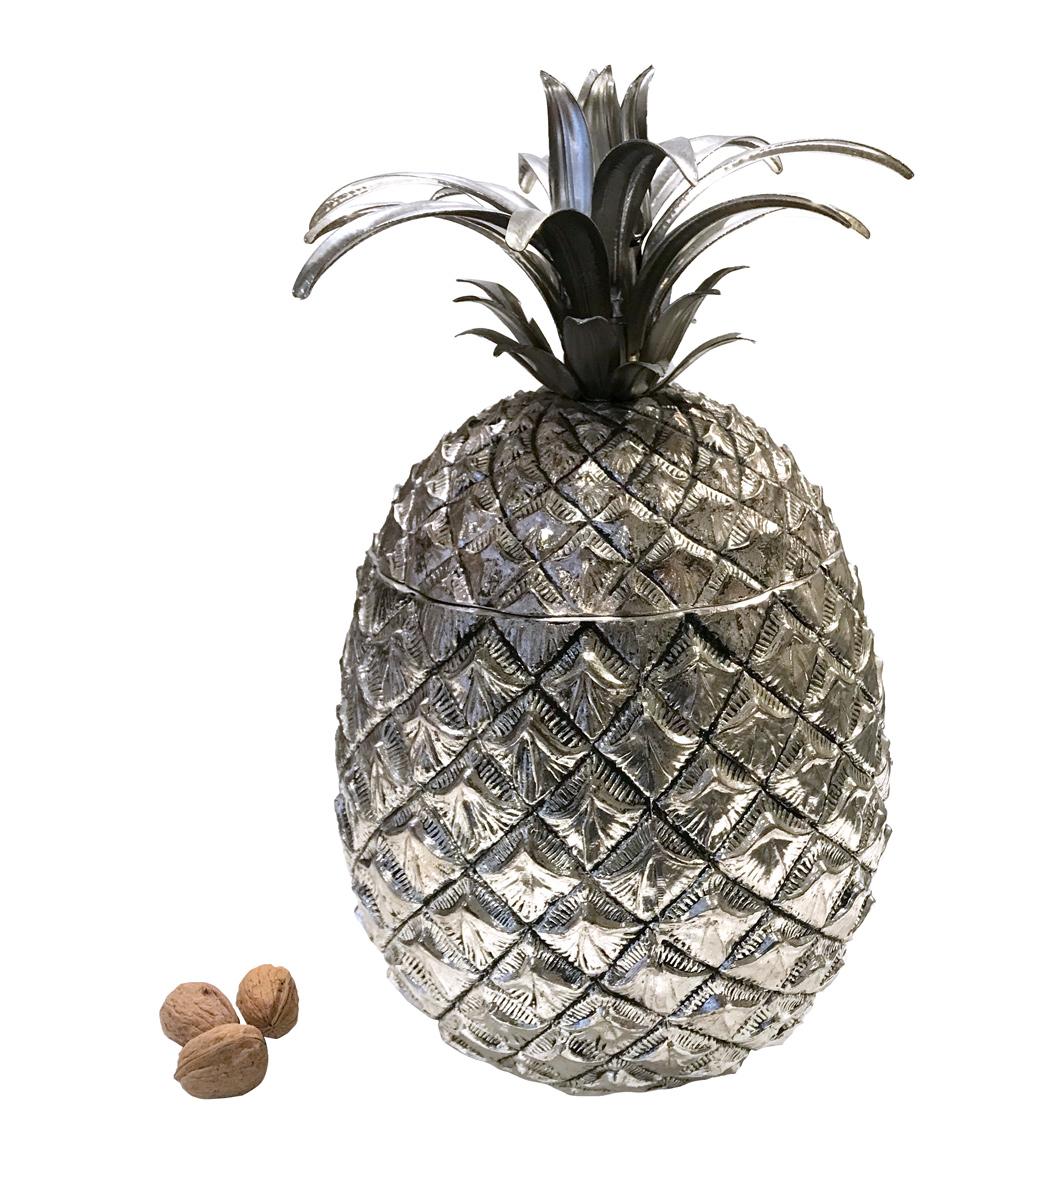 Exceptionnel seau à glace ananas King Size, conçu par Mauro Manetti.
Le seau à glace en forme d'ananas est sa pièce emblématique mondialement connue : le petit modèle est très connu et a été copié de nombreuses fois mais ce géant est très rare. La